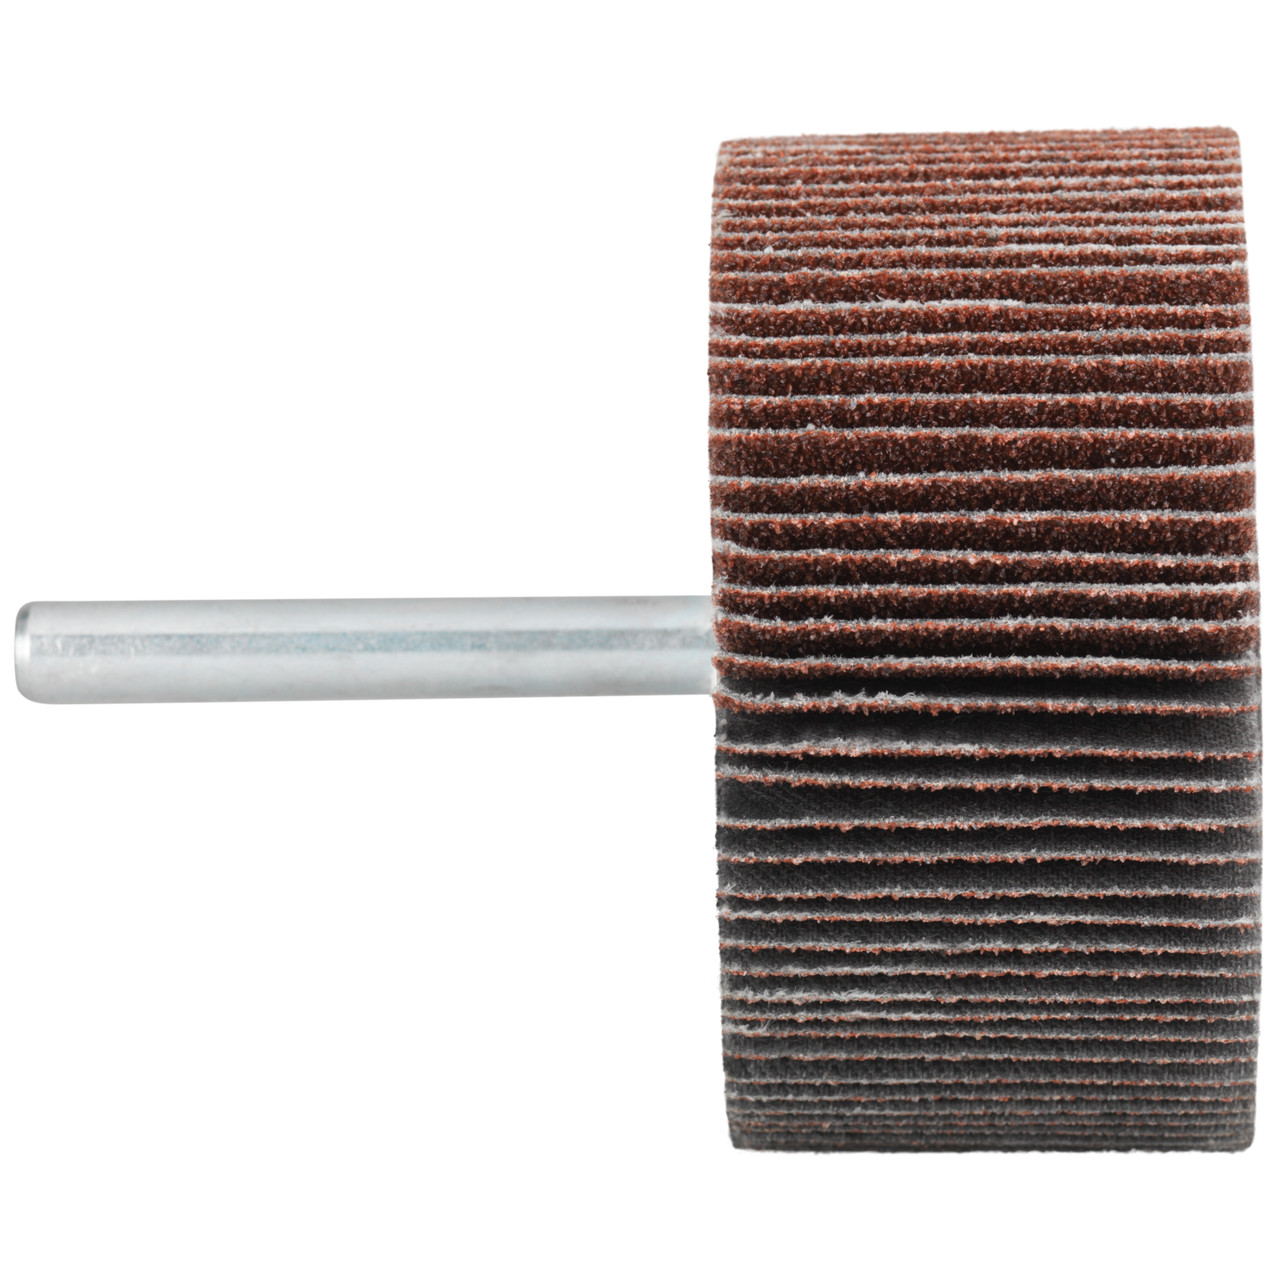 Tyrolit A-P01 C X Pennen DxD 30x10 Voor staal, roestvast staal en non-ferrometalen, P120, vorm: 52LA, Art. 816872